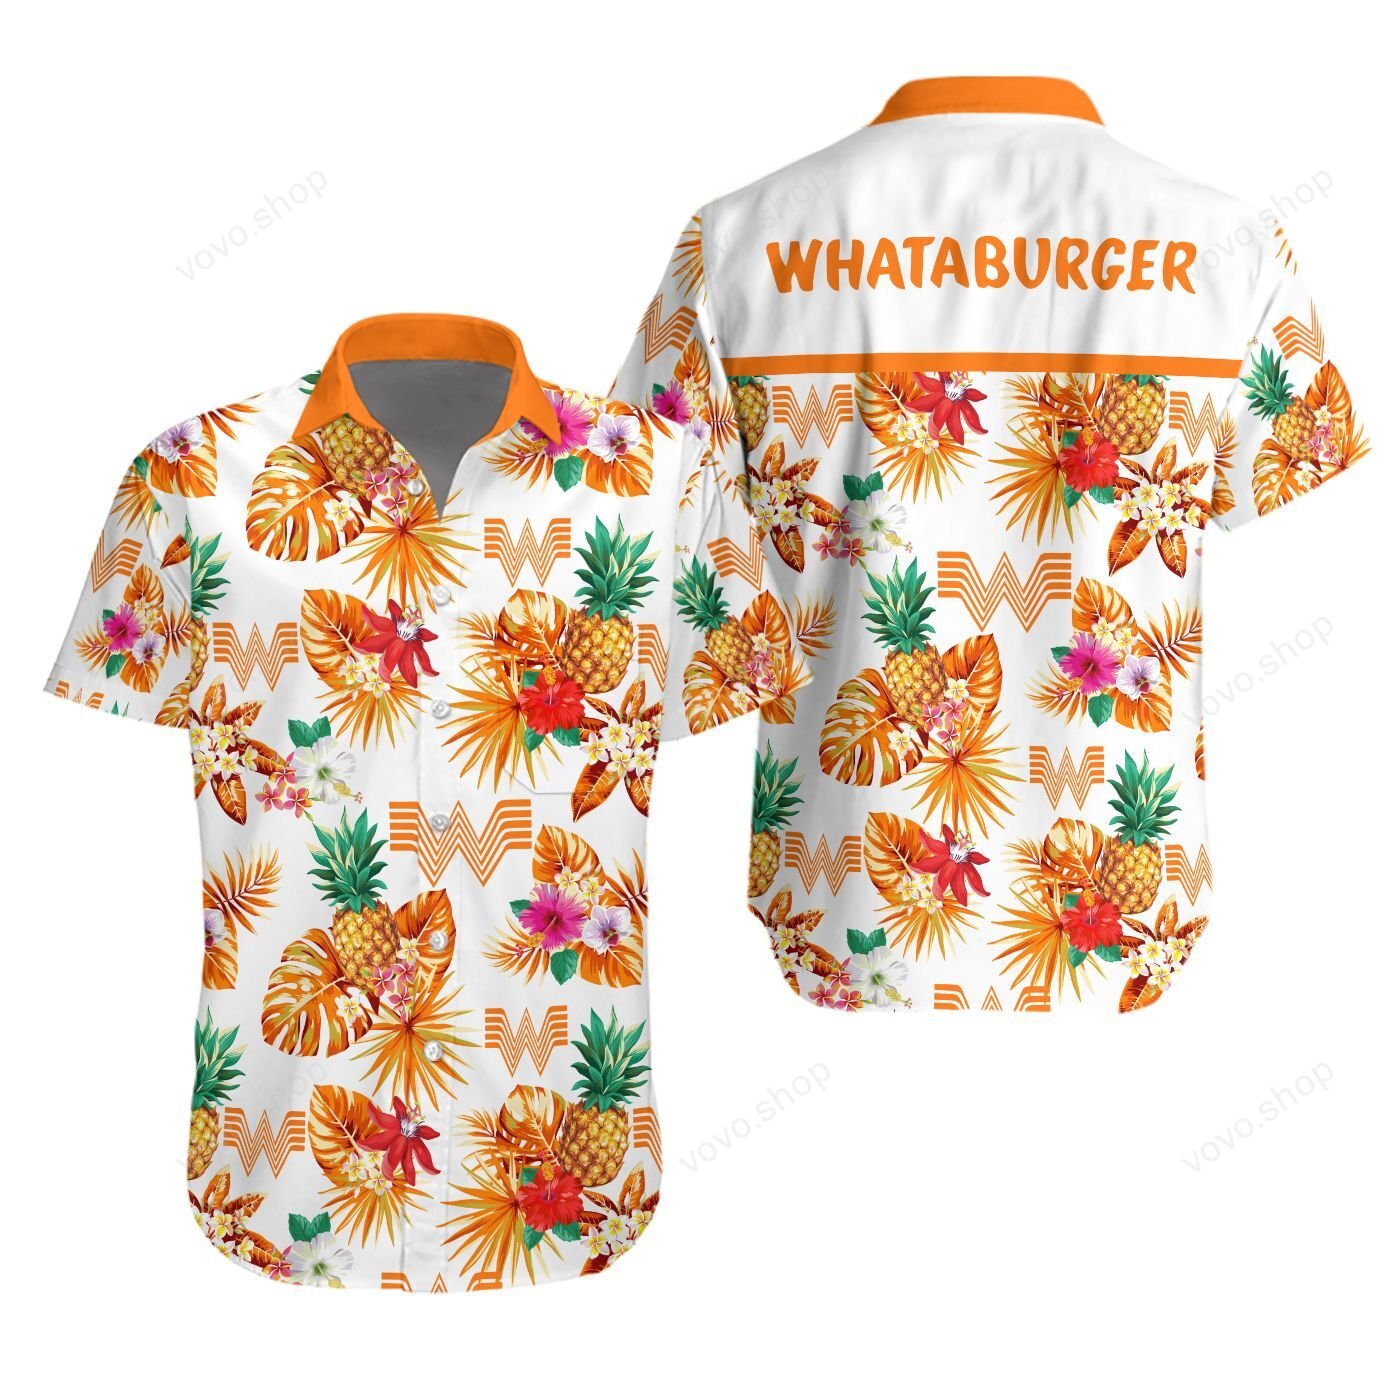 Whataburger Hawaiian shirt and short